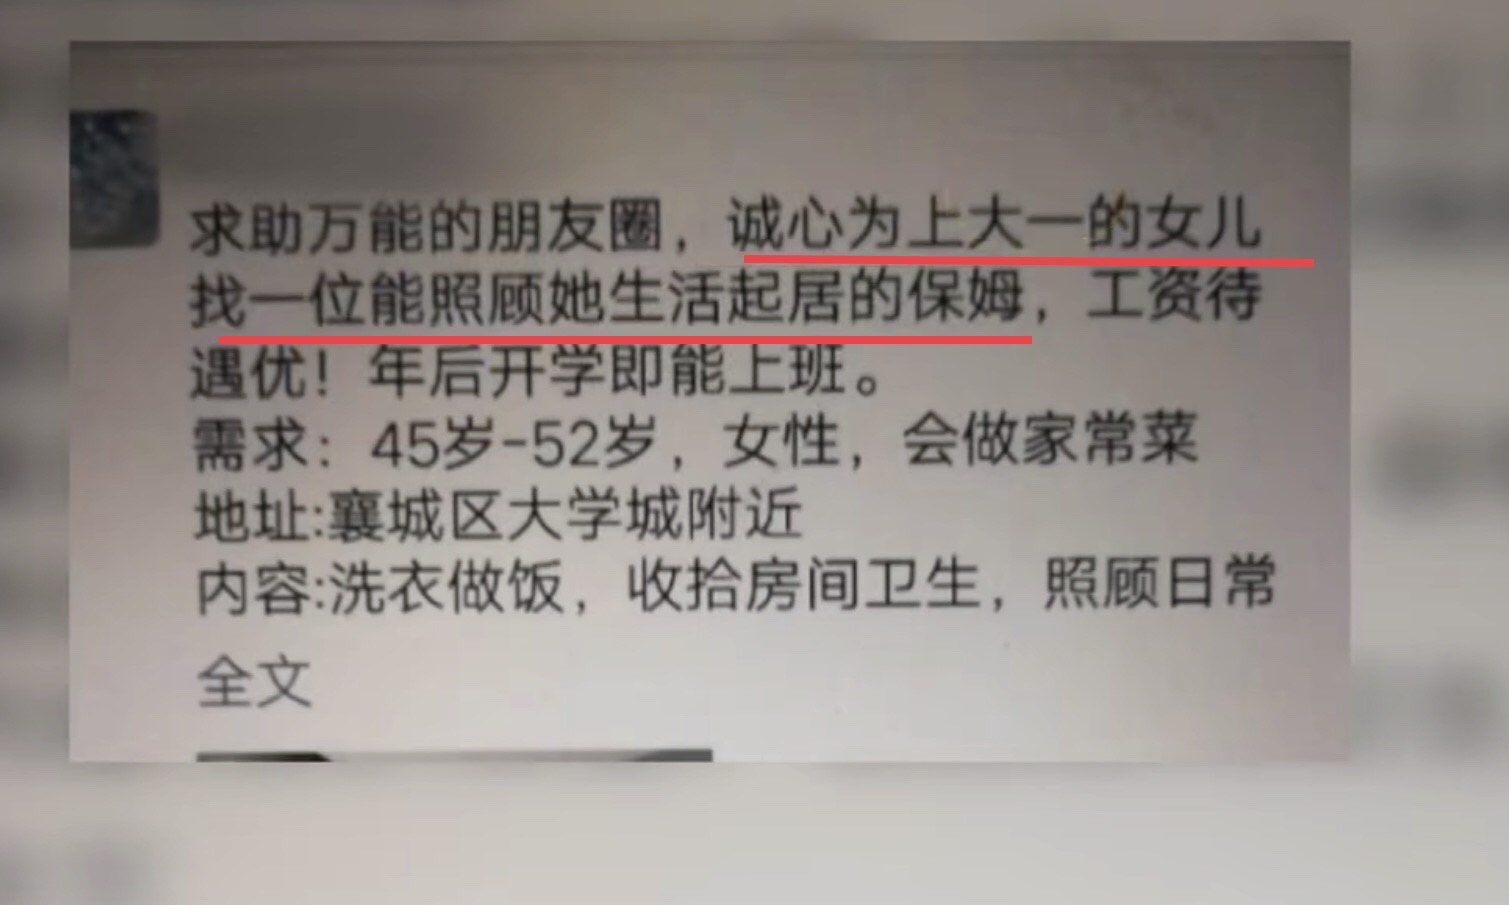 保姆招聘网_上海家政需求信息 上海198526家政网